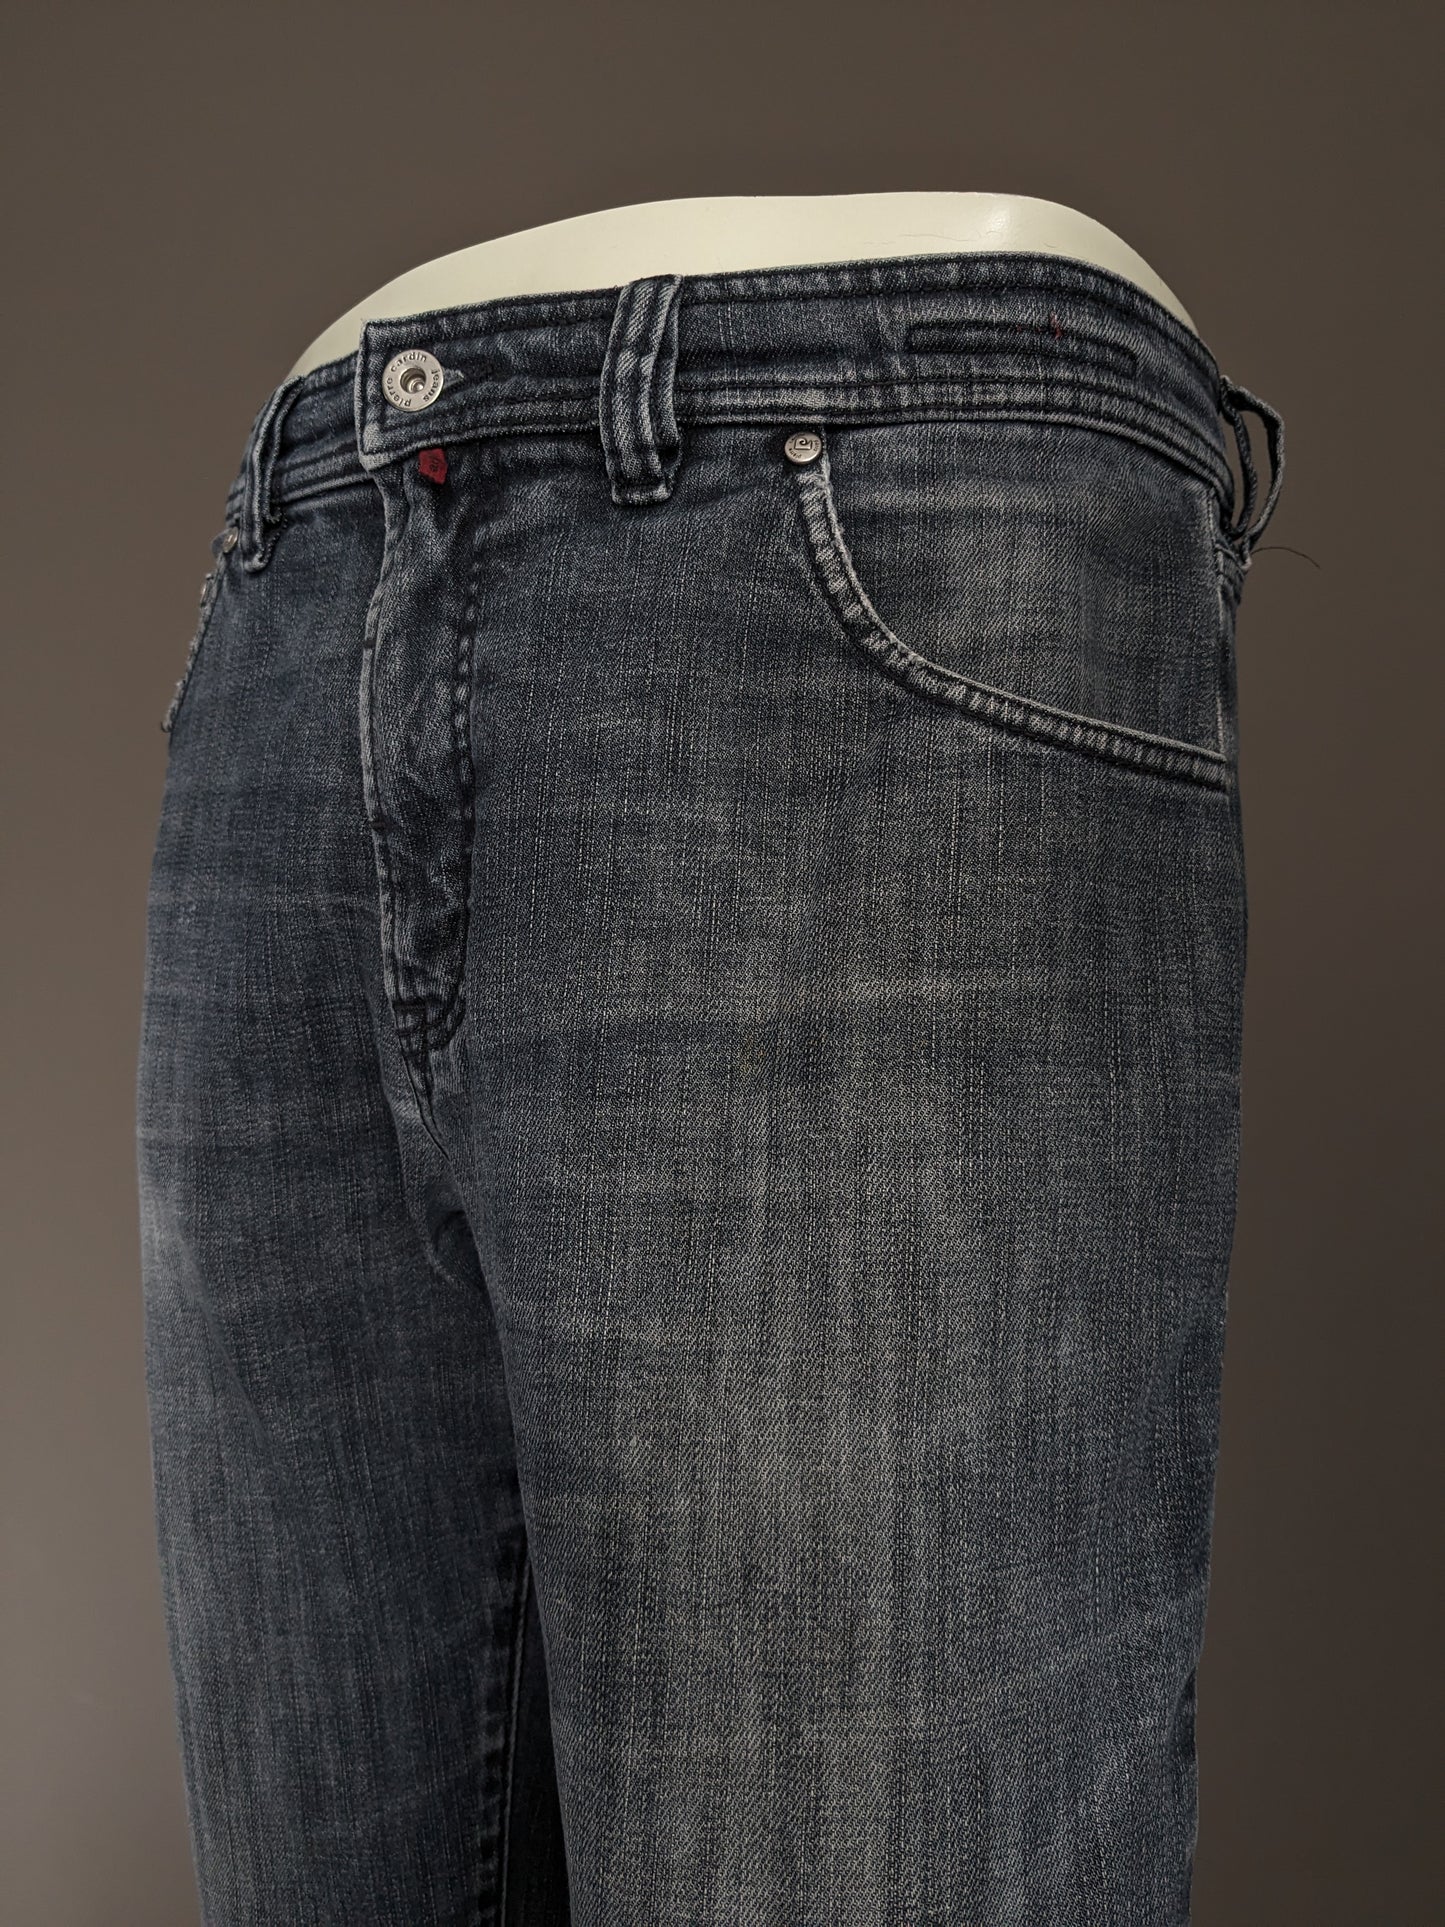 Jeans Pierre Cardin. Couleur gris noir. Taille W33 - L30. Type Mod Deauville.